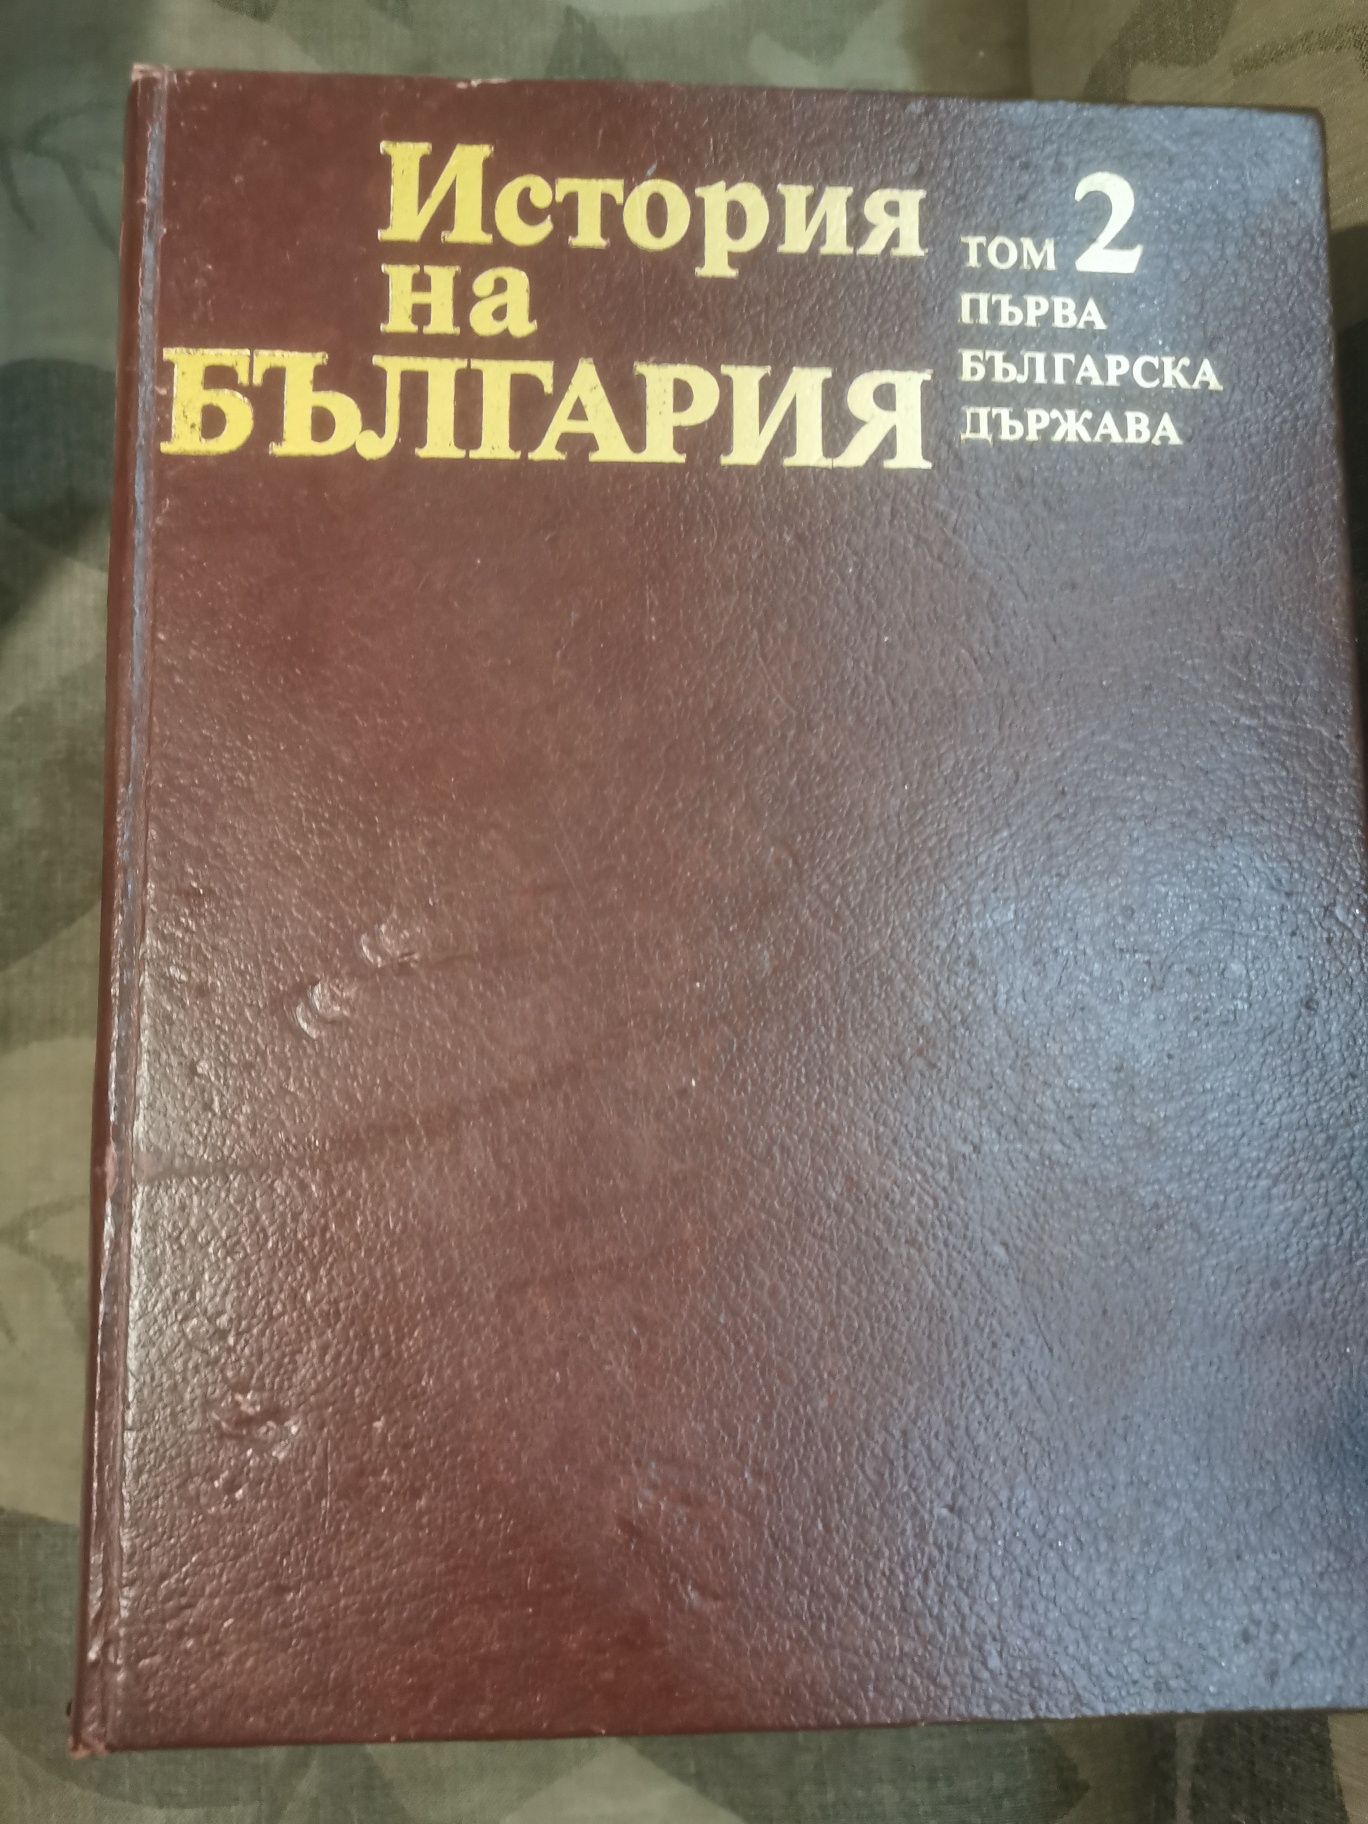 Томове История на България на БАН - томове 1-7